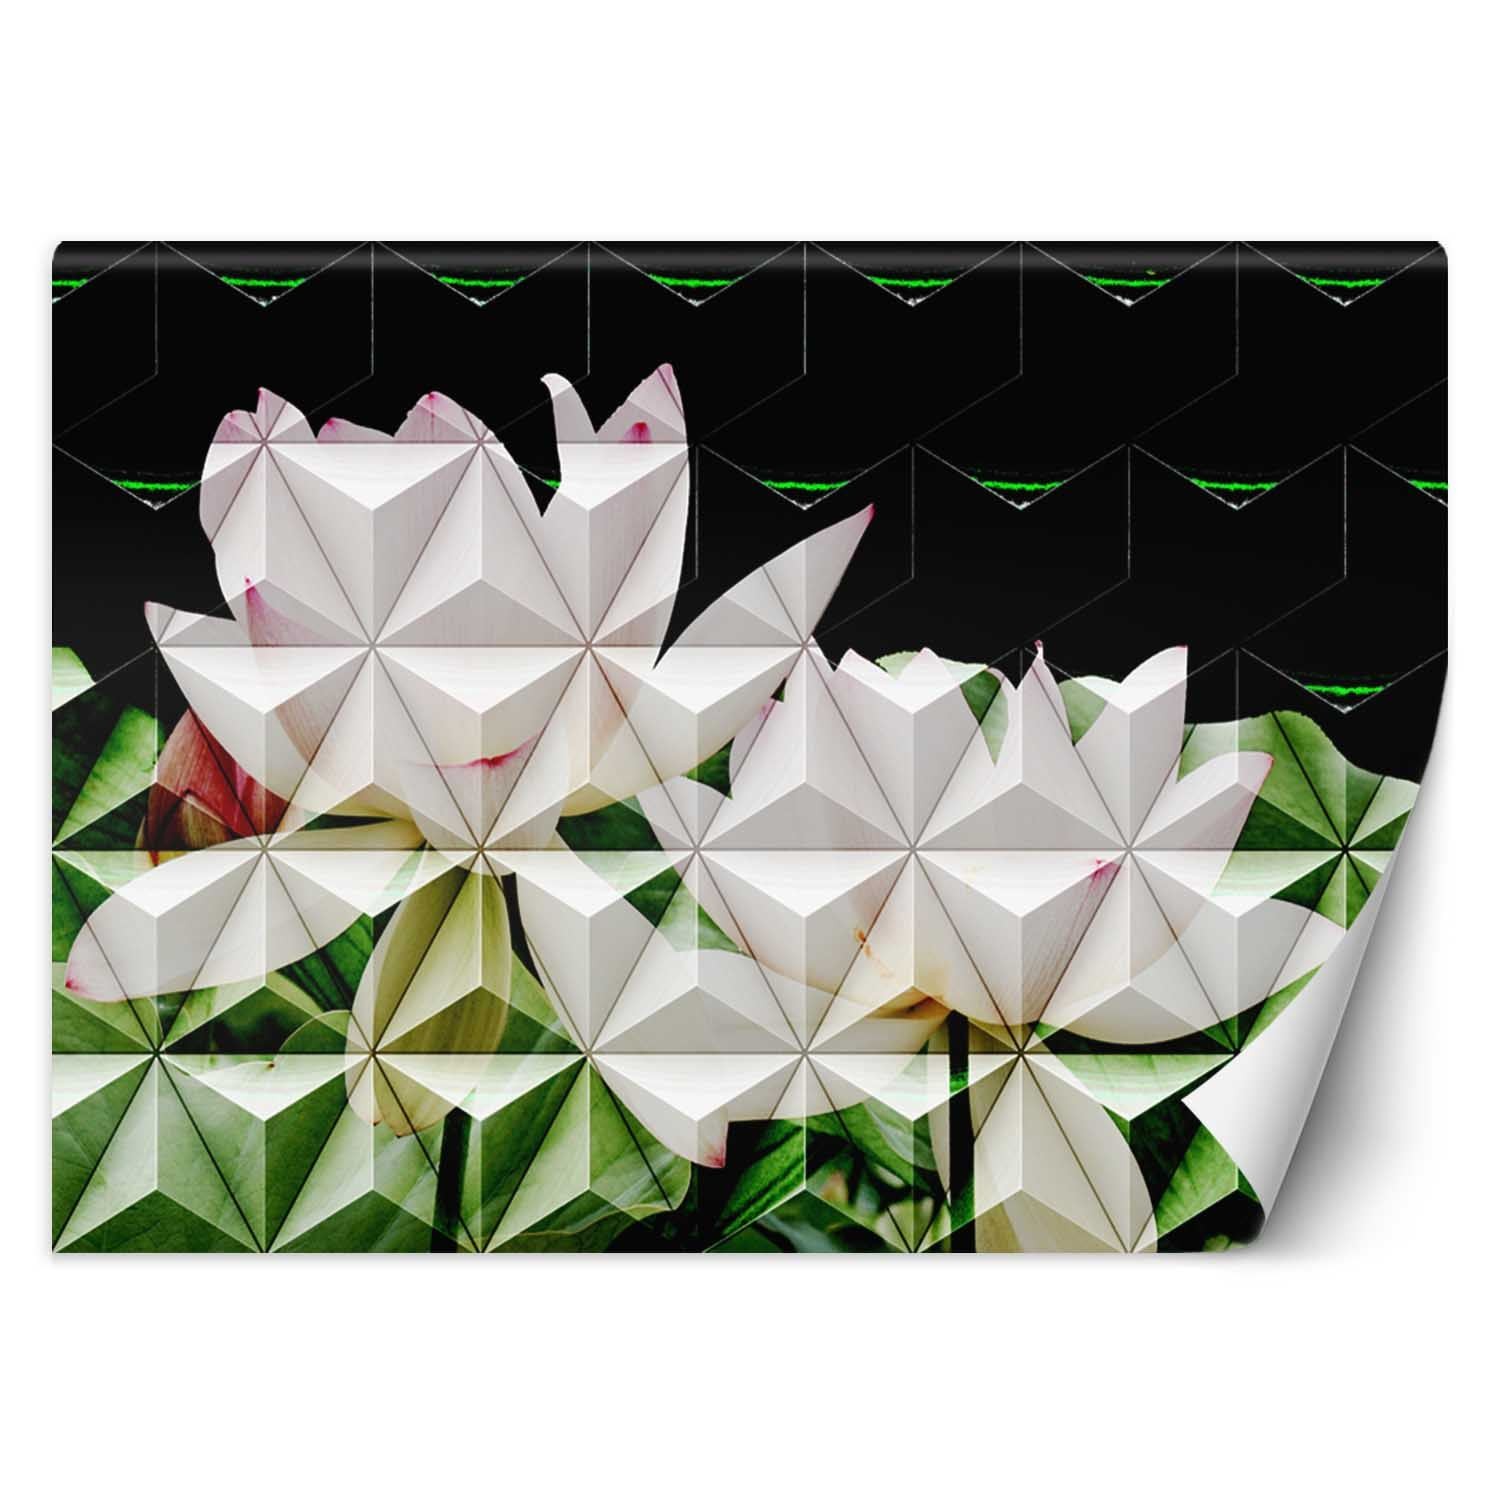 Trend24 – Behang – Geometrische Lotusbloem – Behangpapier – Behang Woonkamer – Fotobehang – 250x175x2 cm – Incl. behanglijm